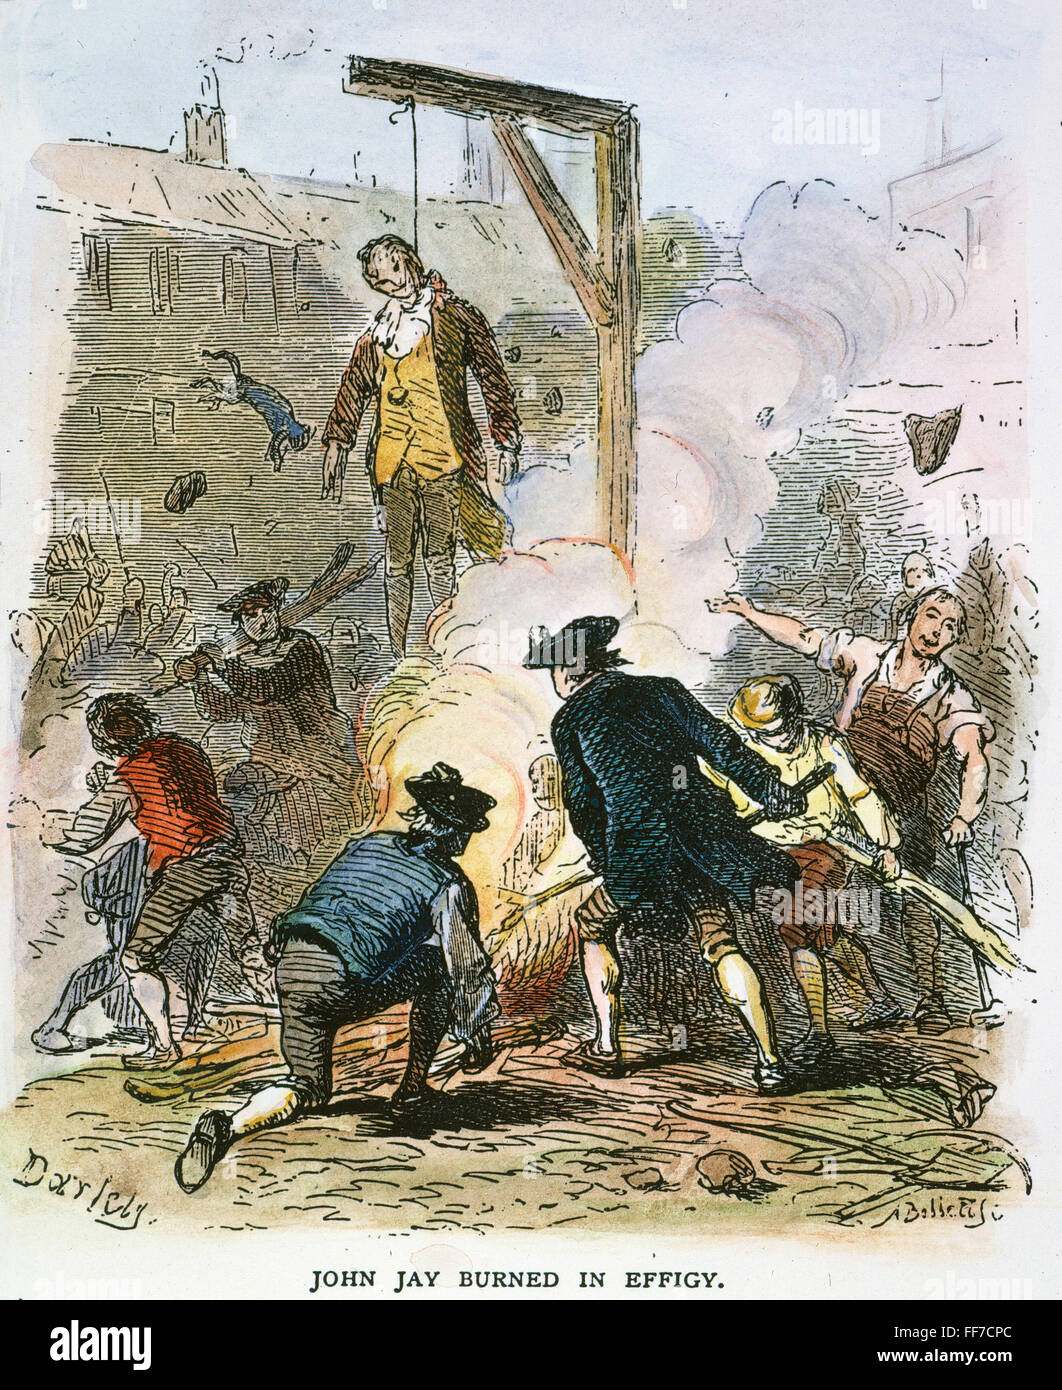 JOHN JAY: Efigie, 1794. /NJeffersonians colgando y John Jay quema en efigie en 1794. Grabado en color, del siglo XIX. Foto de stock